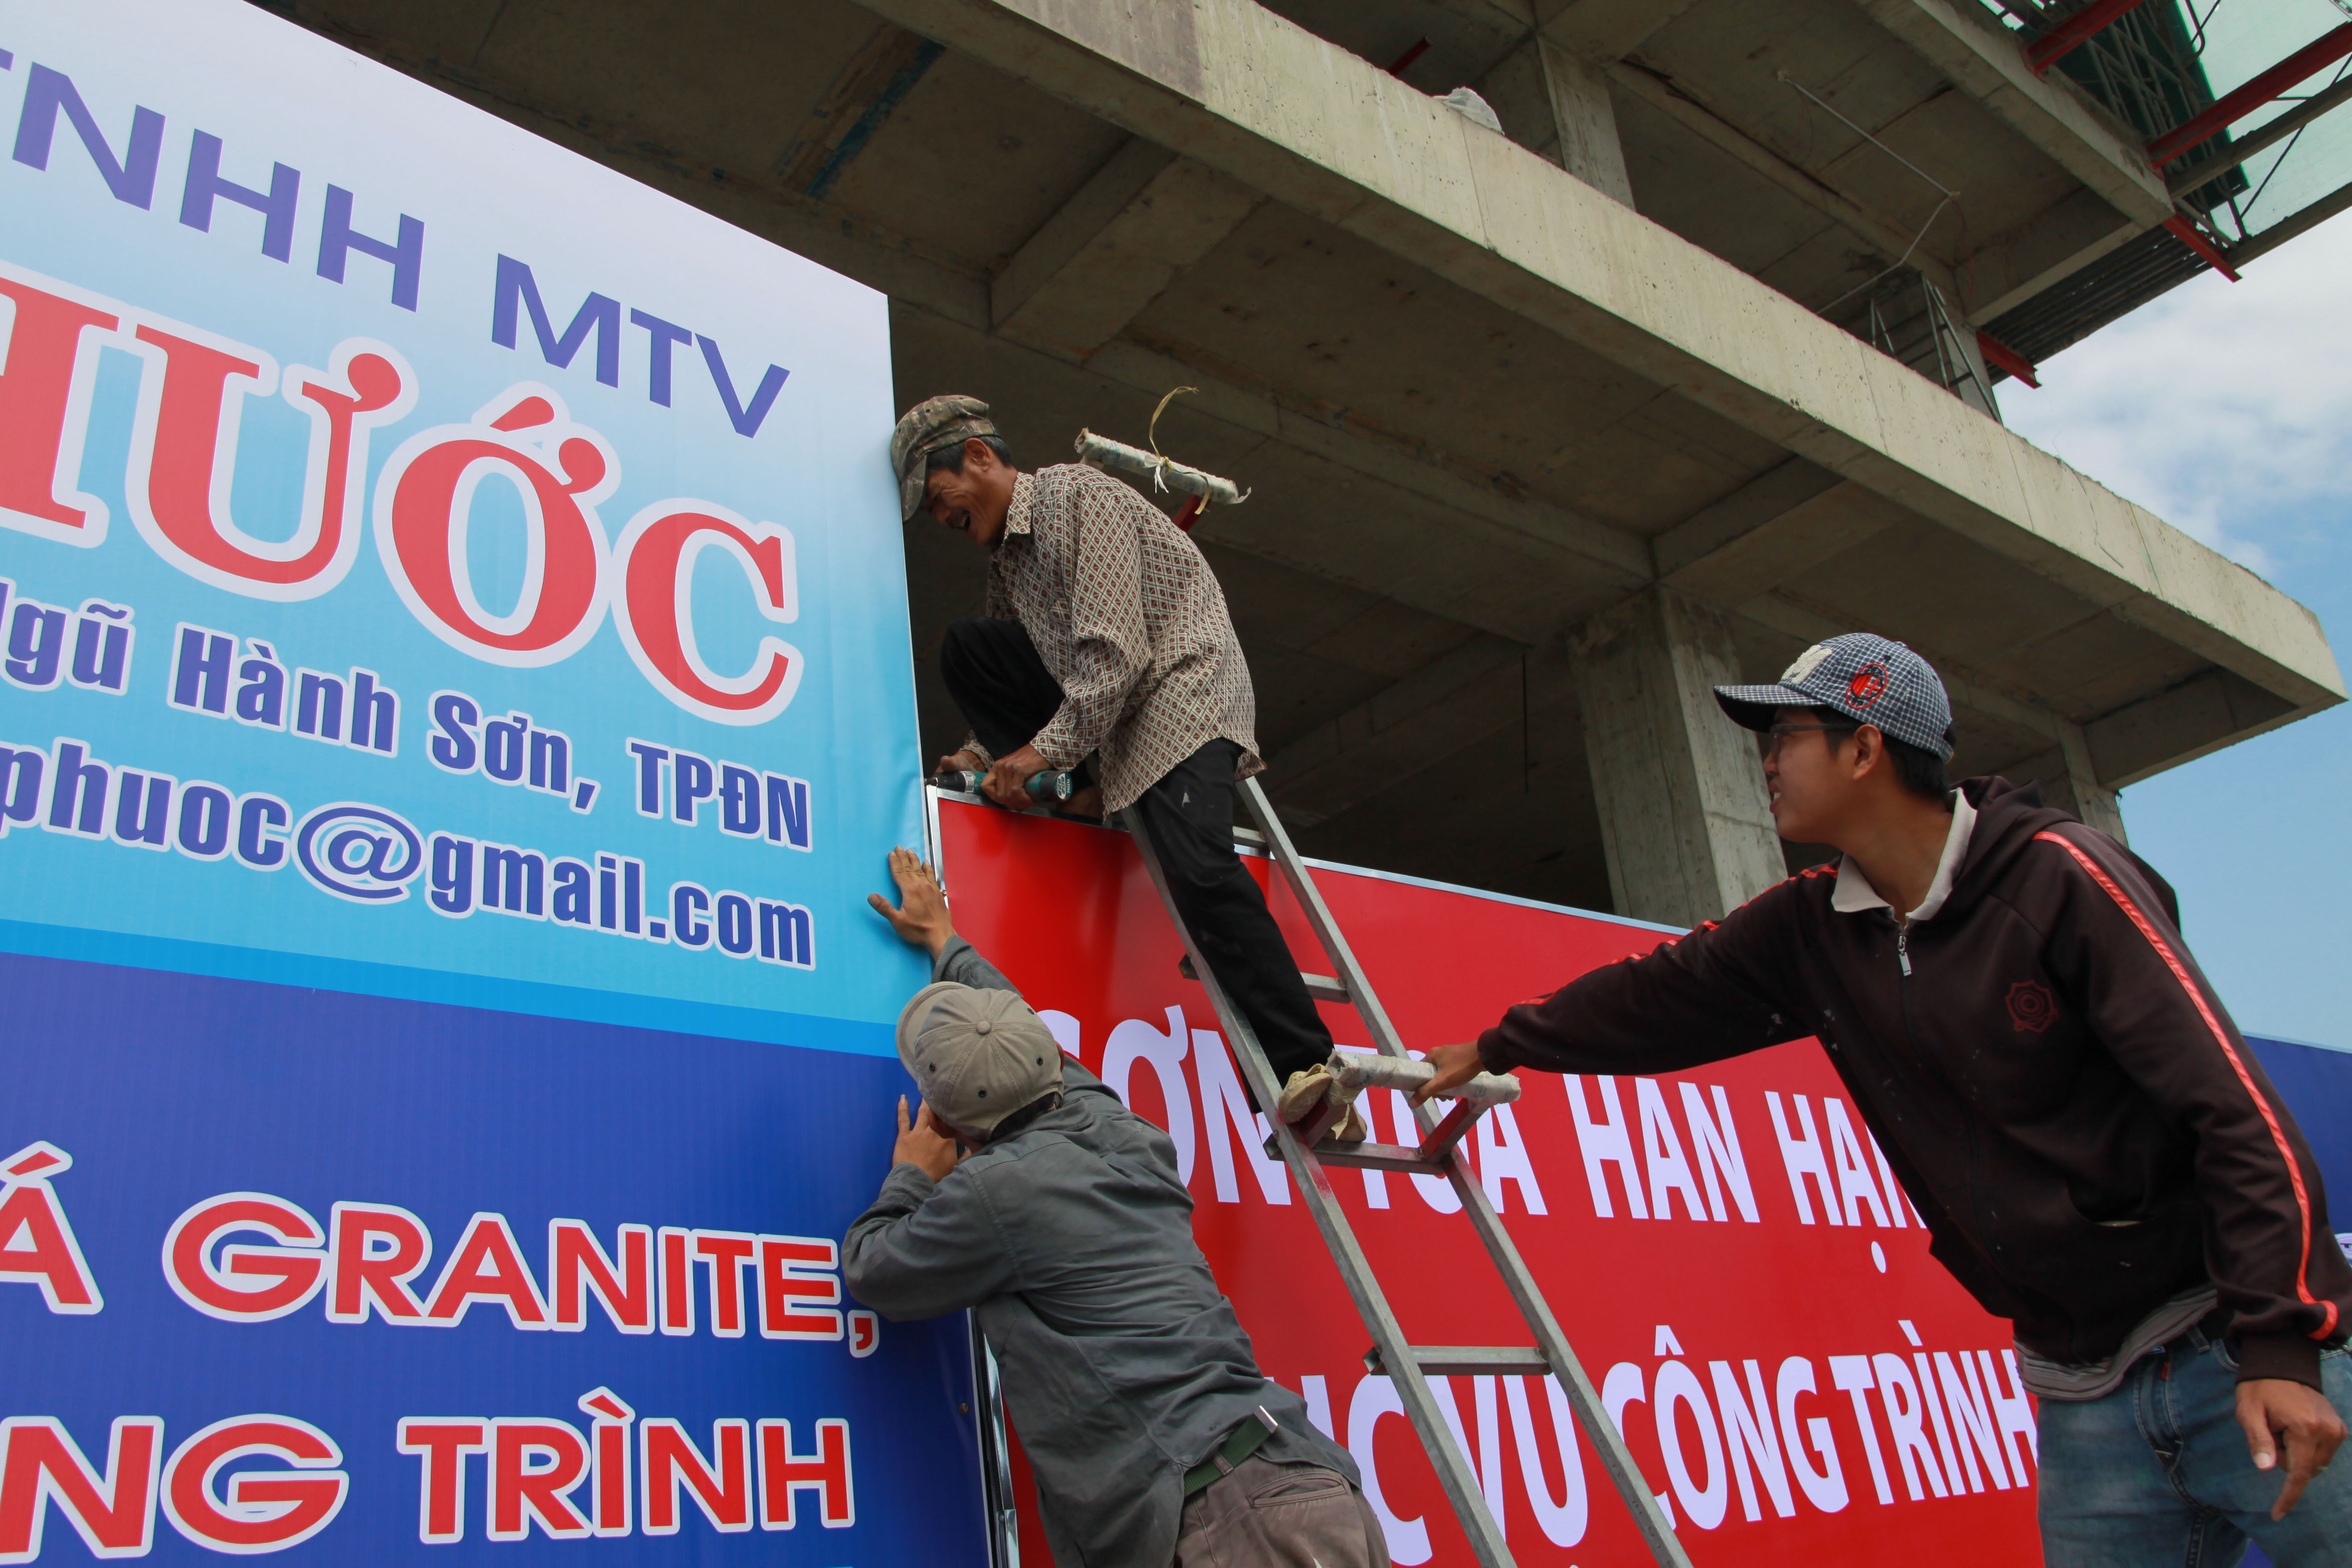 Panels are erected around a construction site in Da Nang. Photo: Tuoi Tre